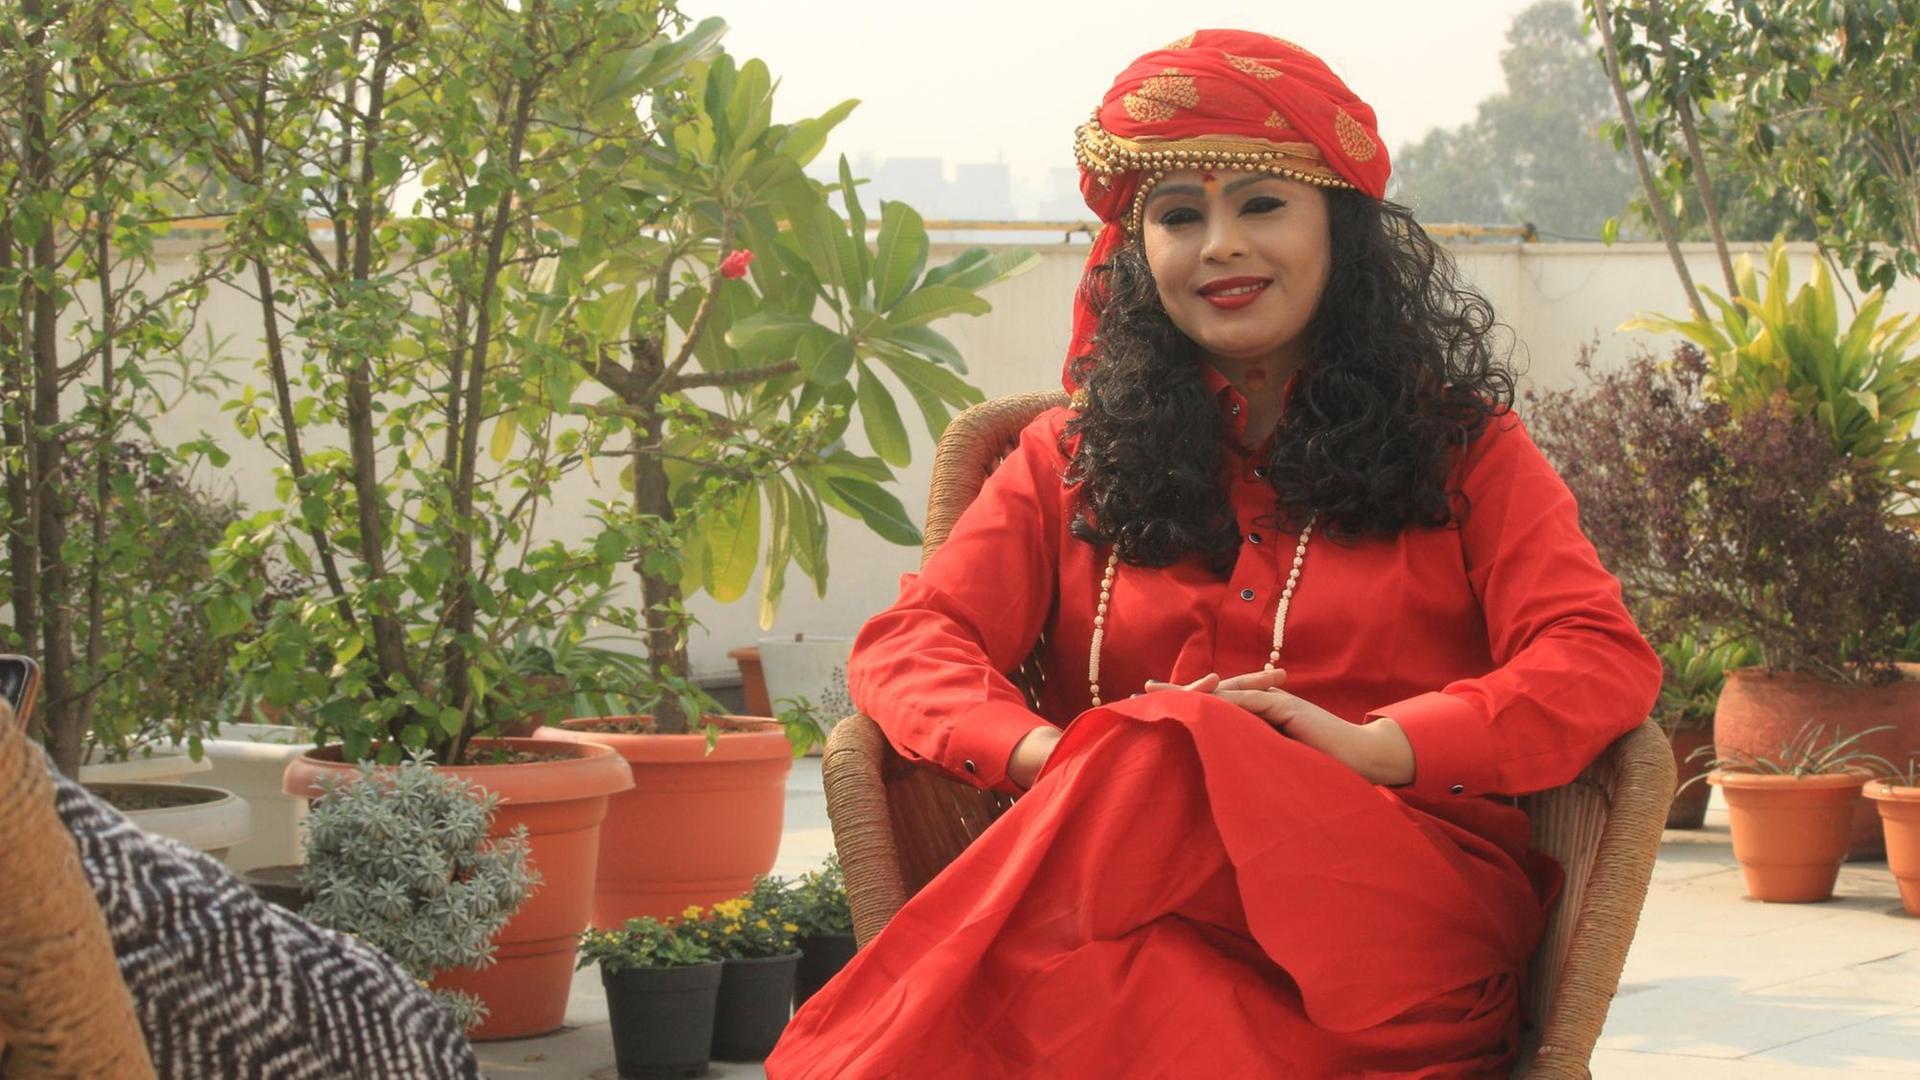 Auf dem Bild ist die indische Sängerin Laxmi Dubey zu sehen. Sie trägt ein traditionelles indisches Kleid.